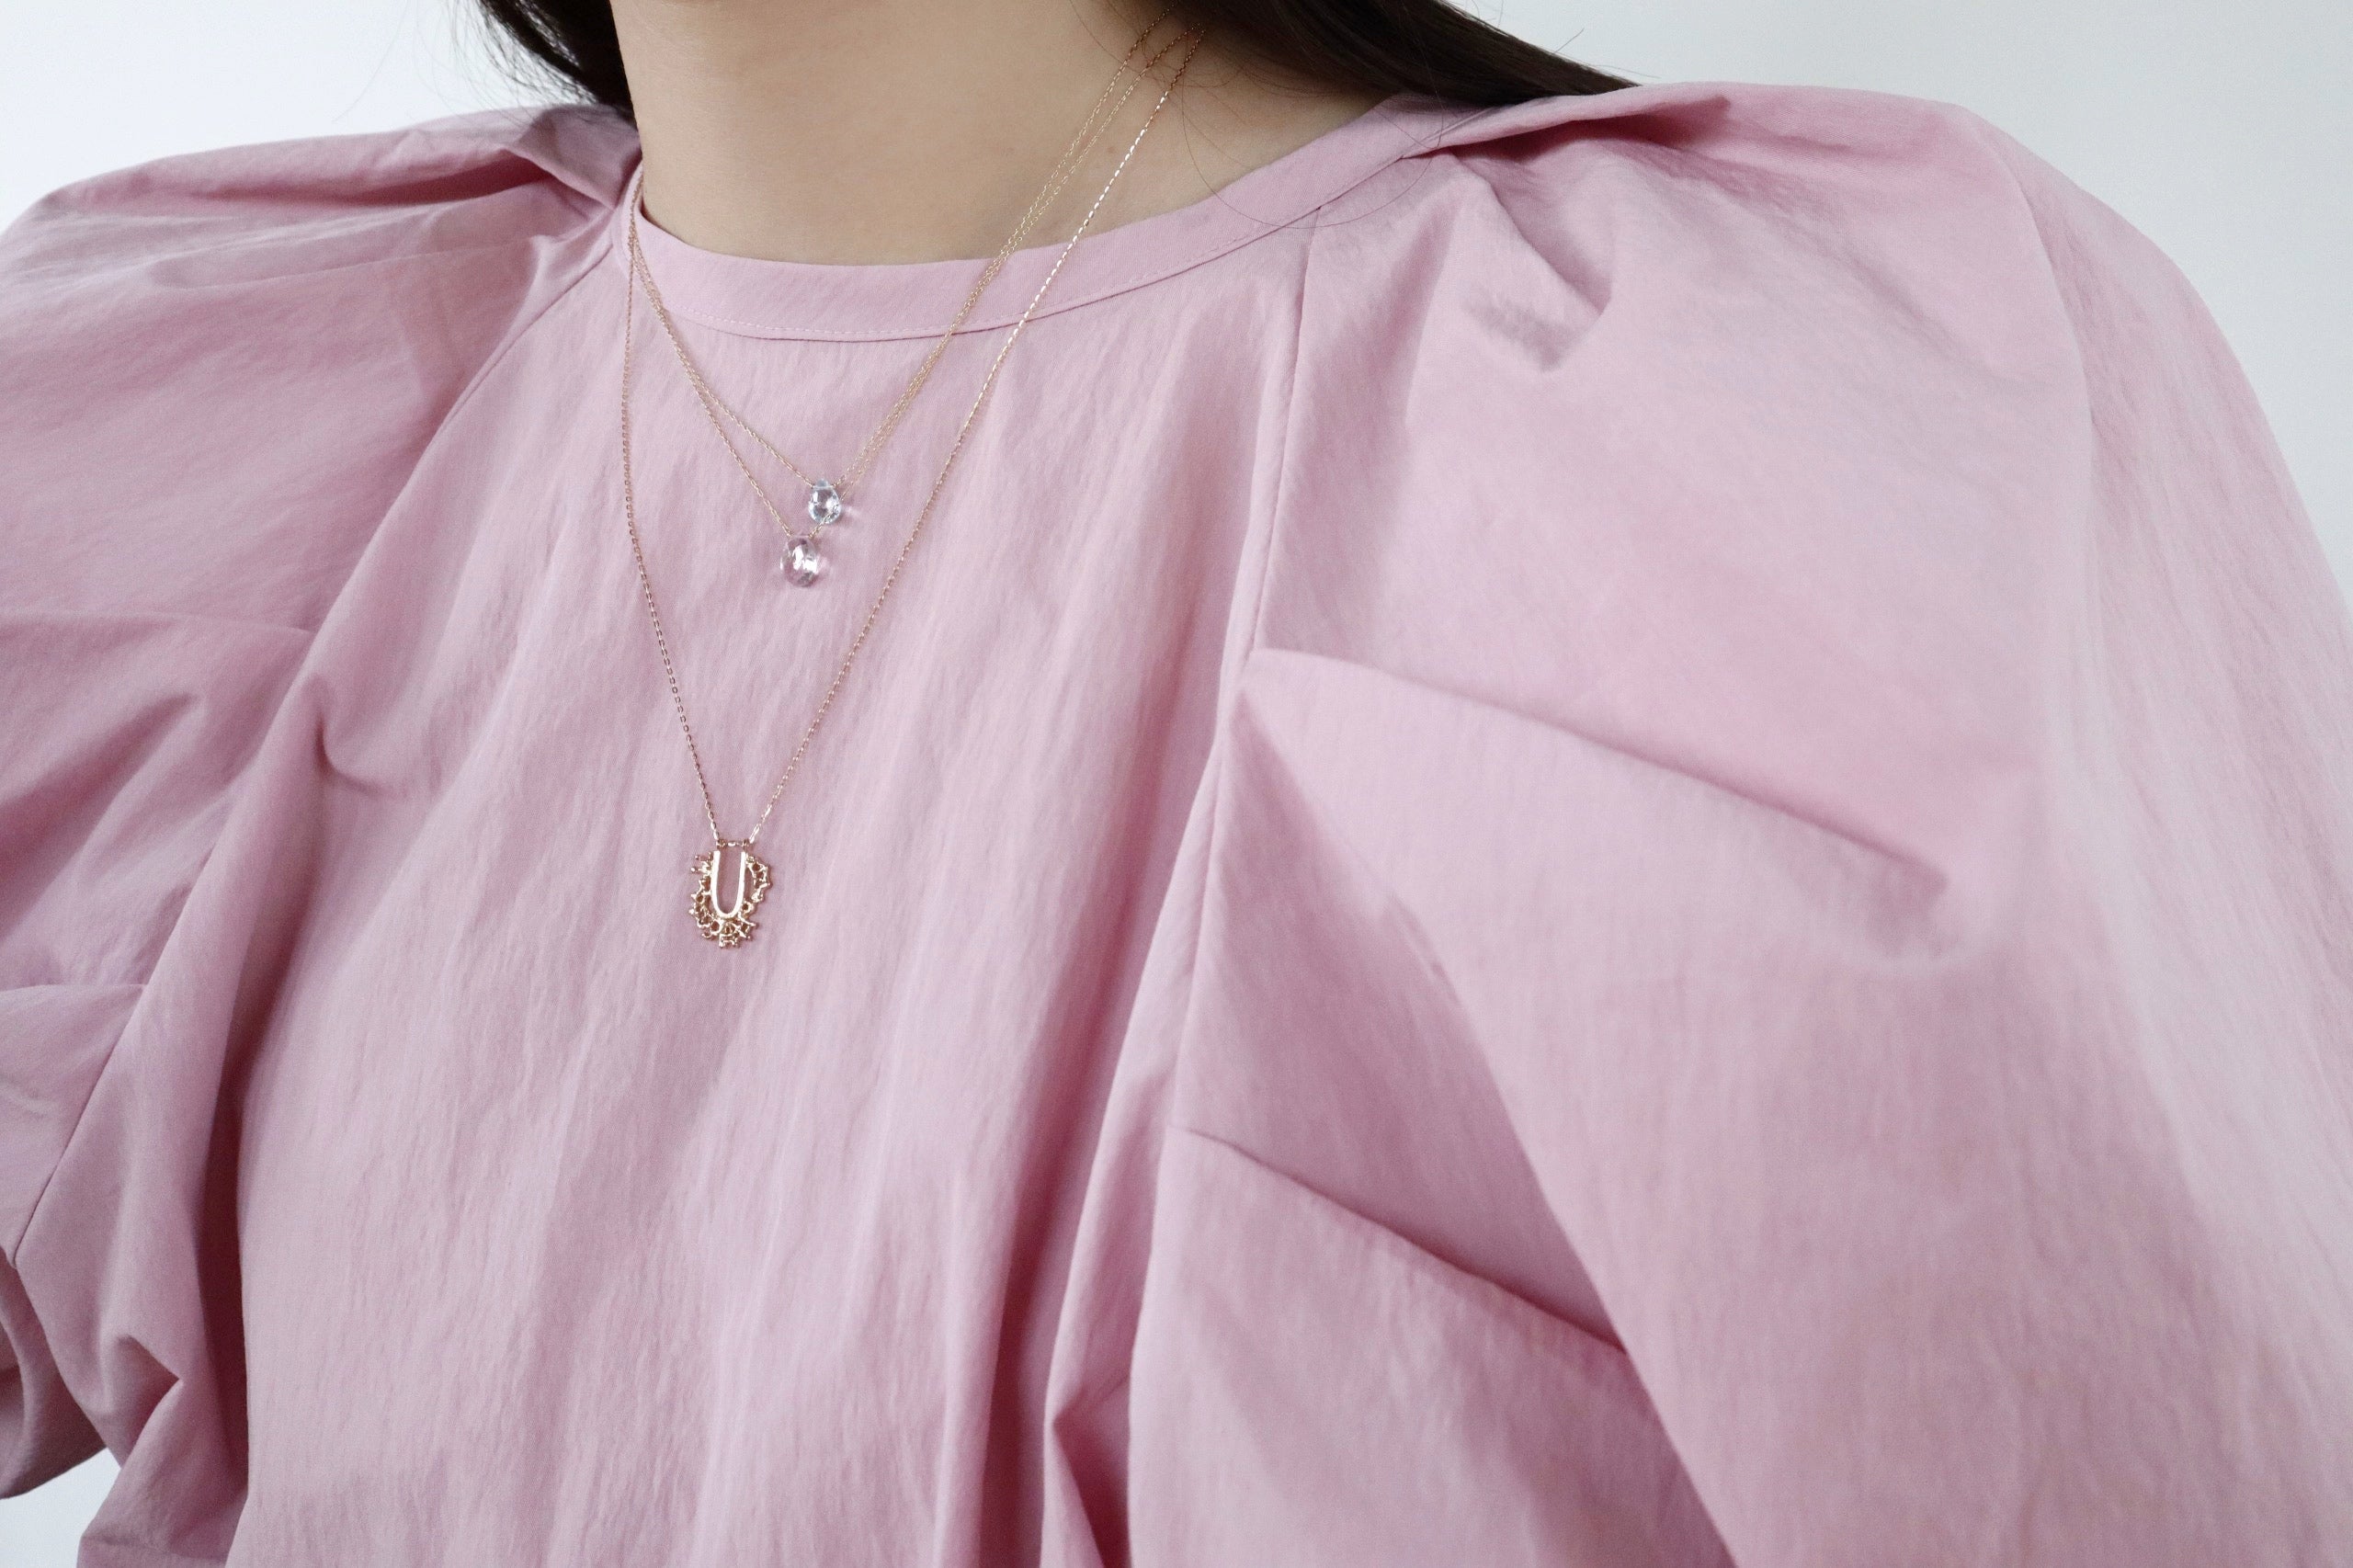 カラーストーンのピンクトパーズの10金イエローゴールドネックレスの着用写真